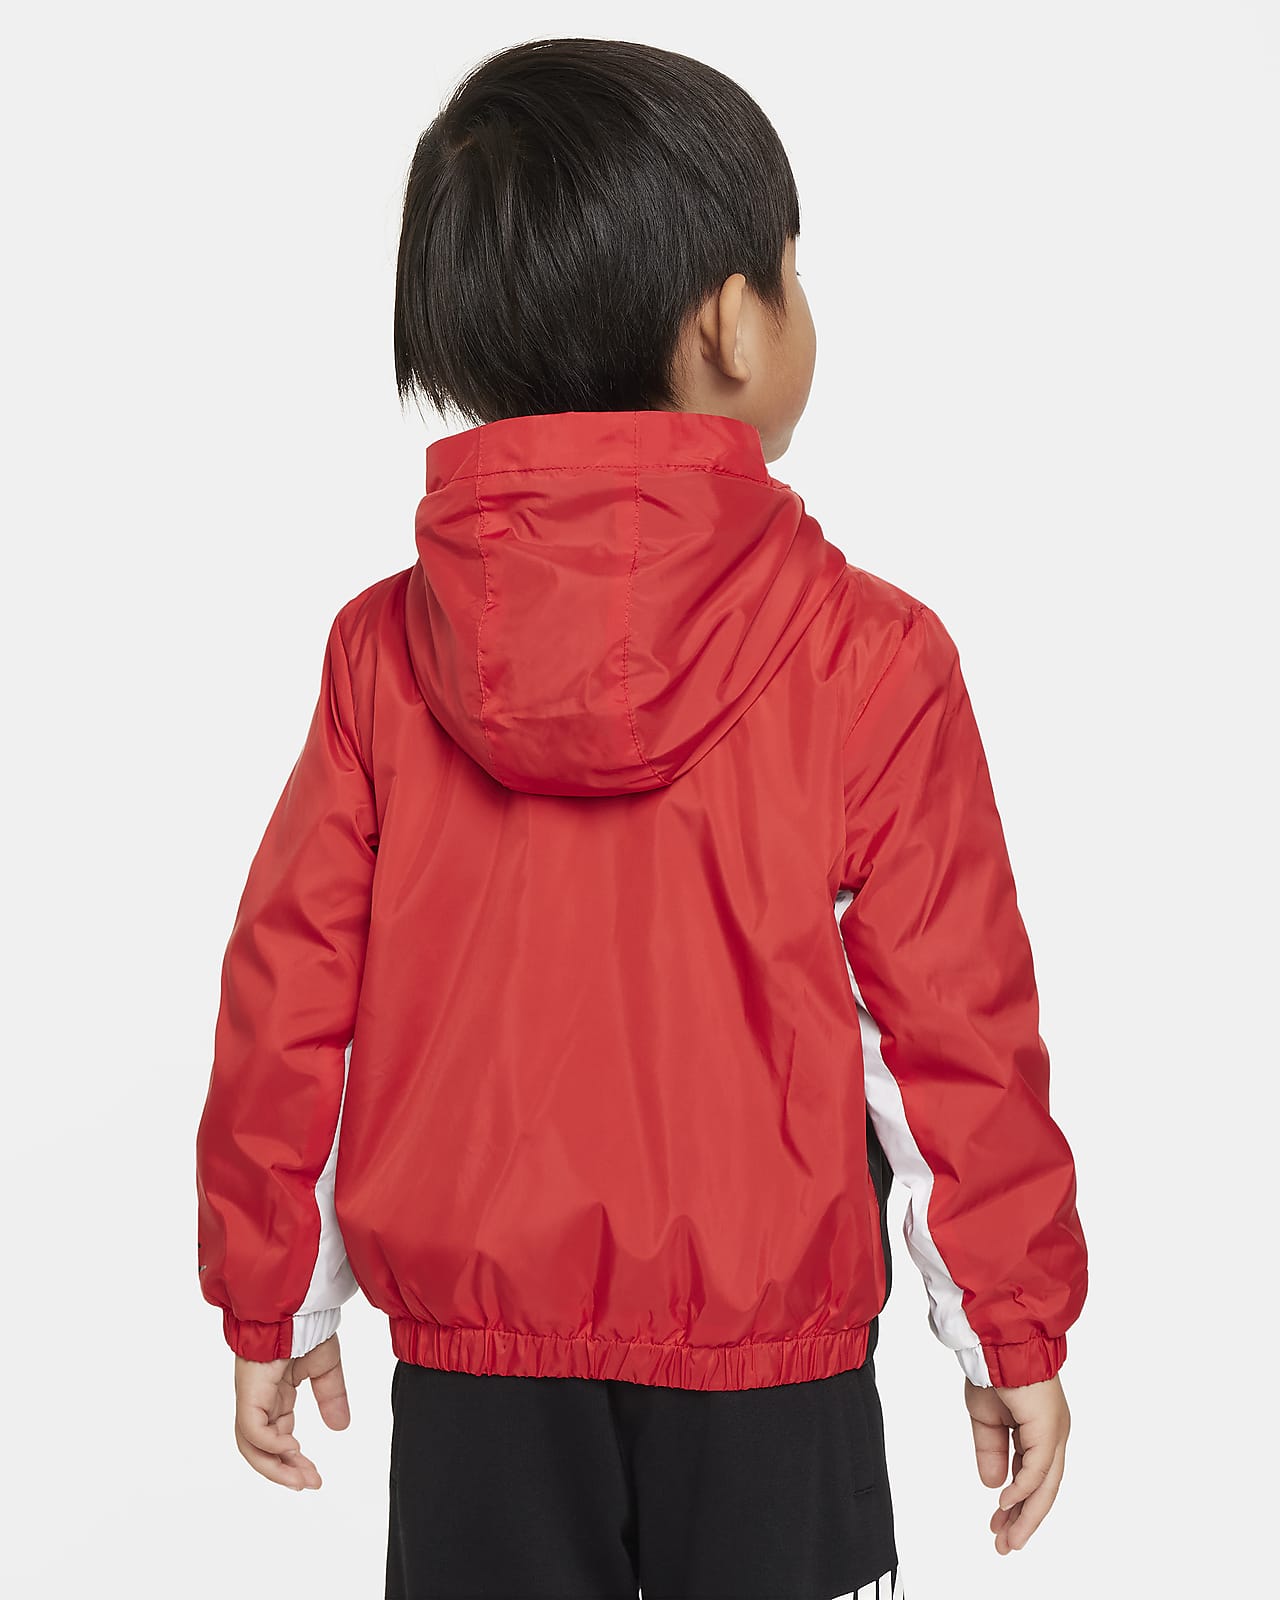 Jacket. Toddler Nike Full-Zip